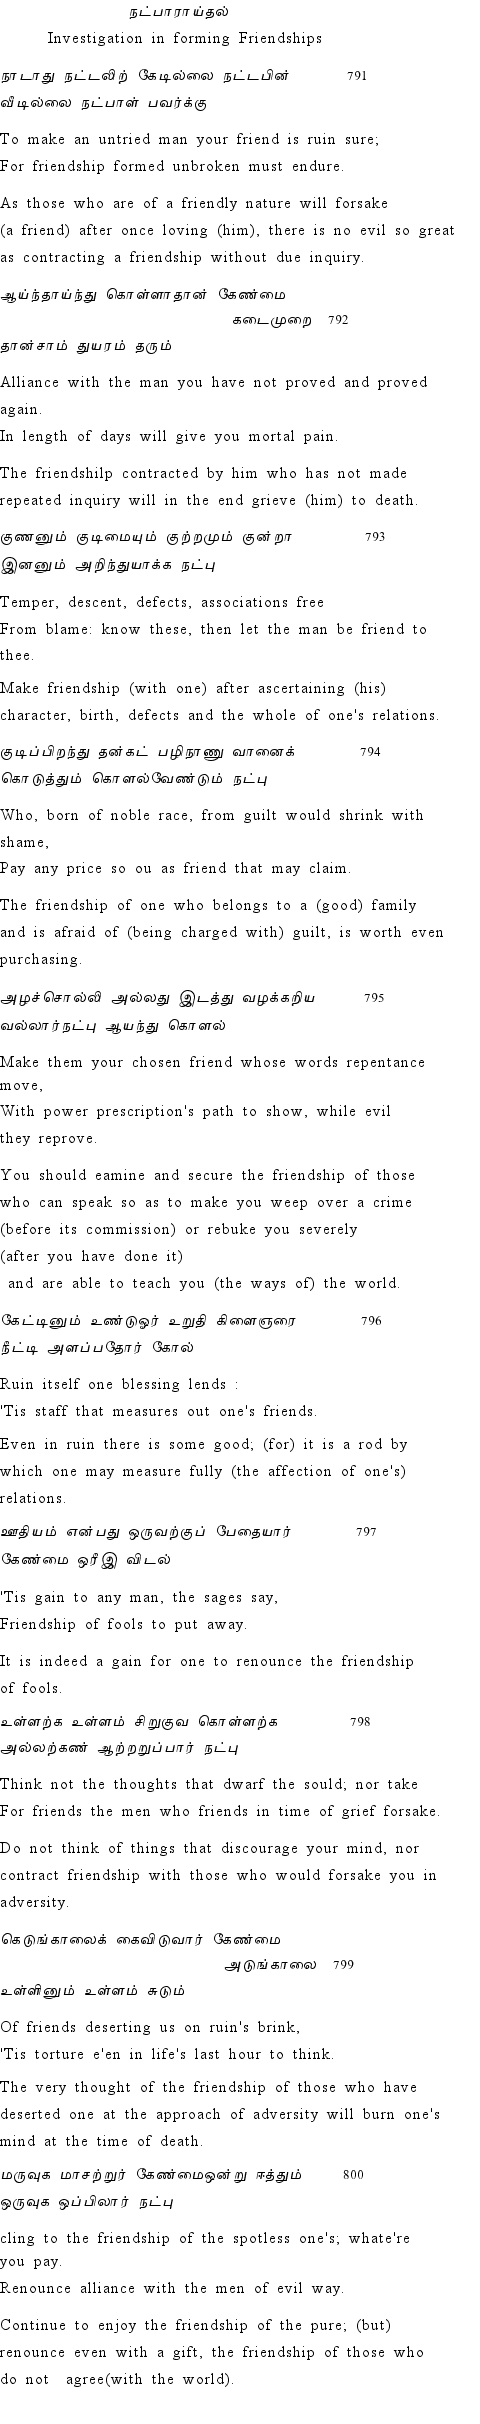 Text of Adhikaram 80